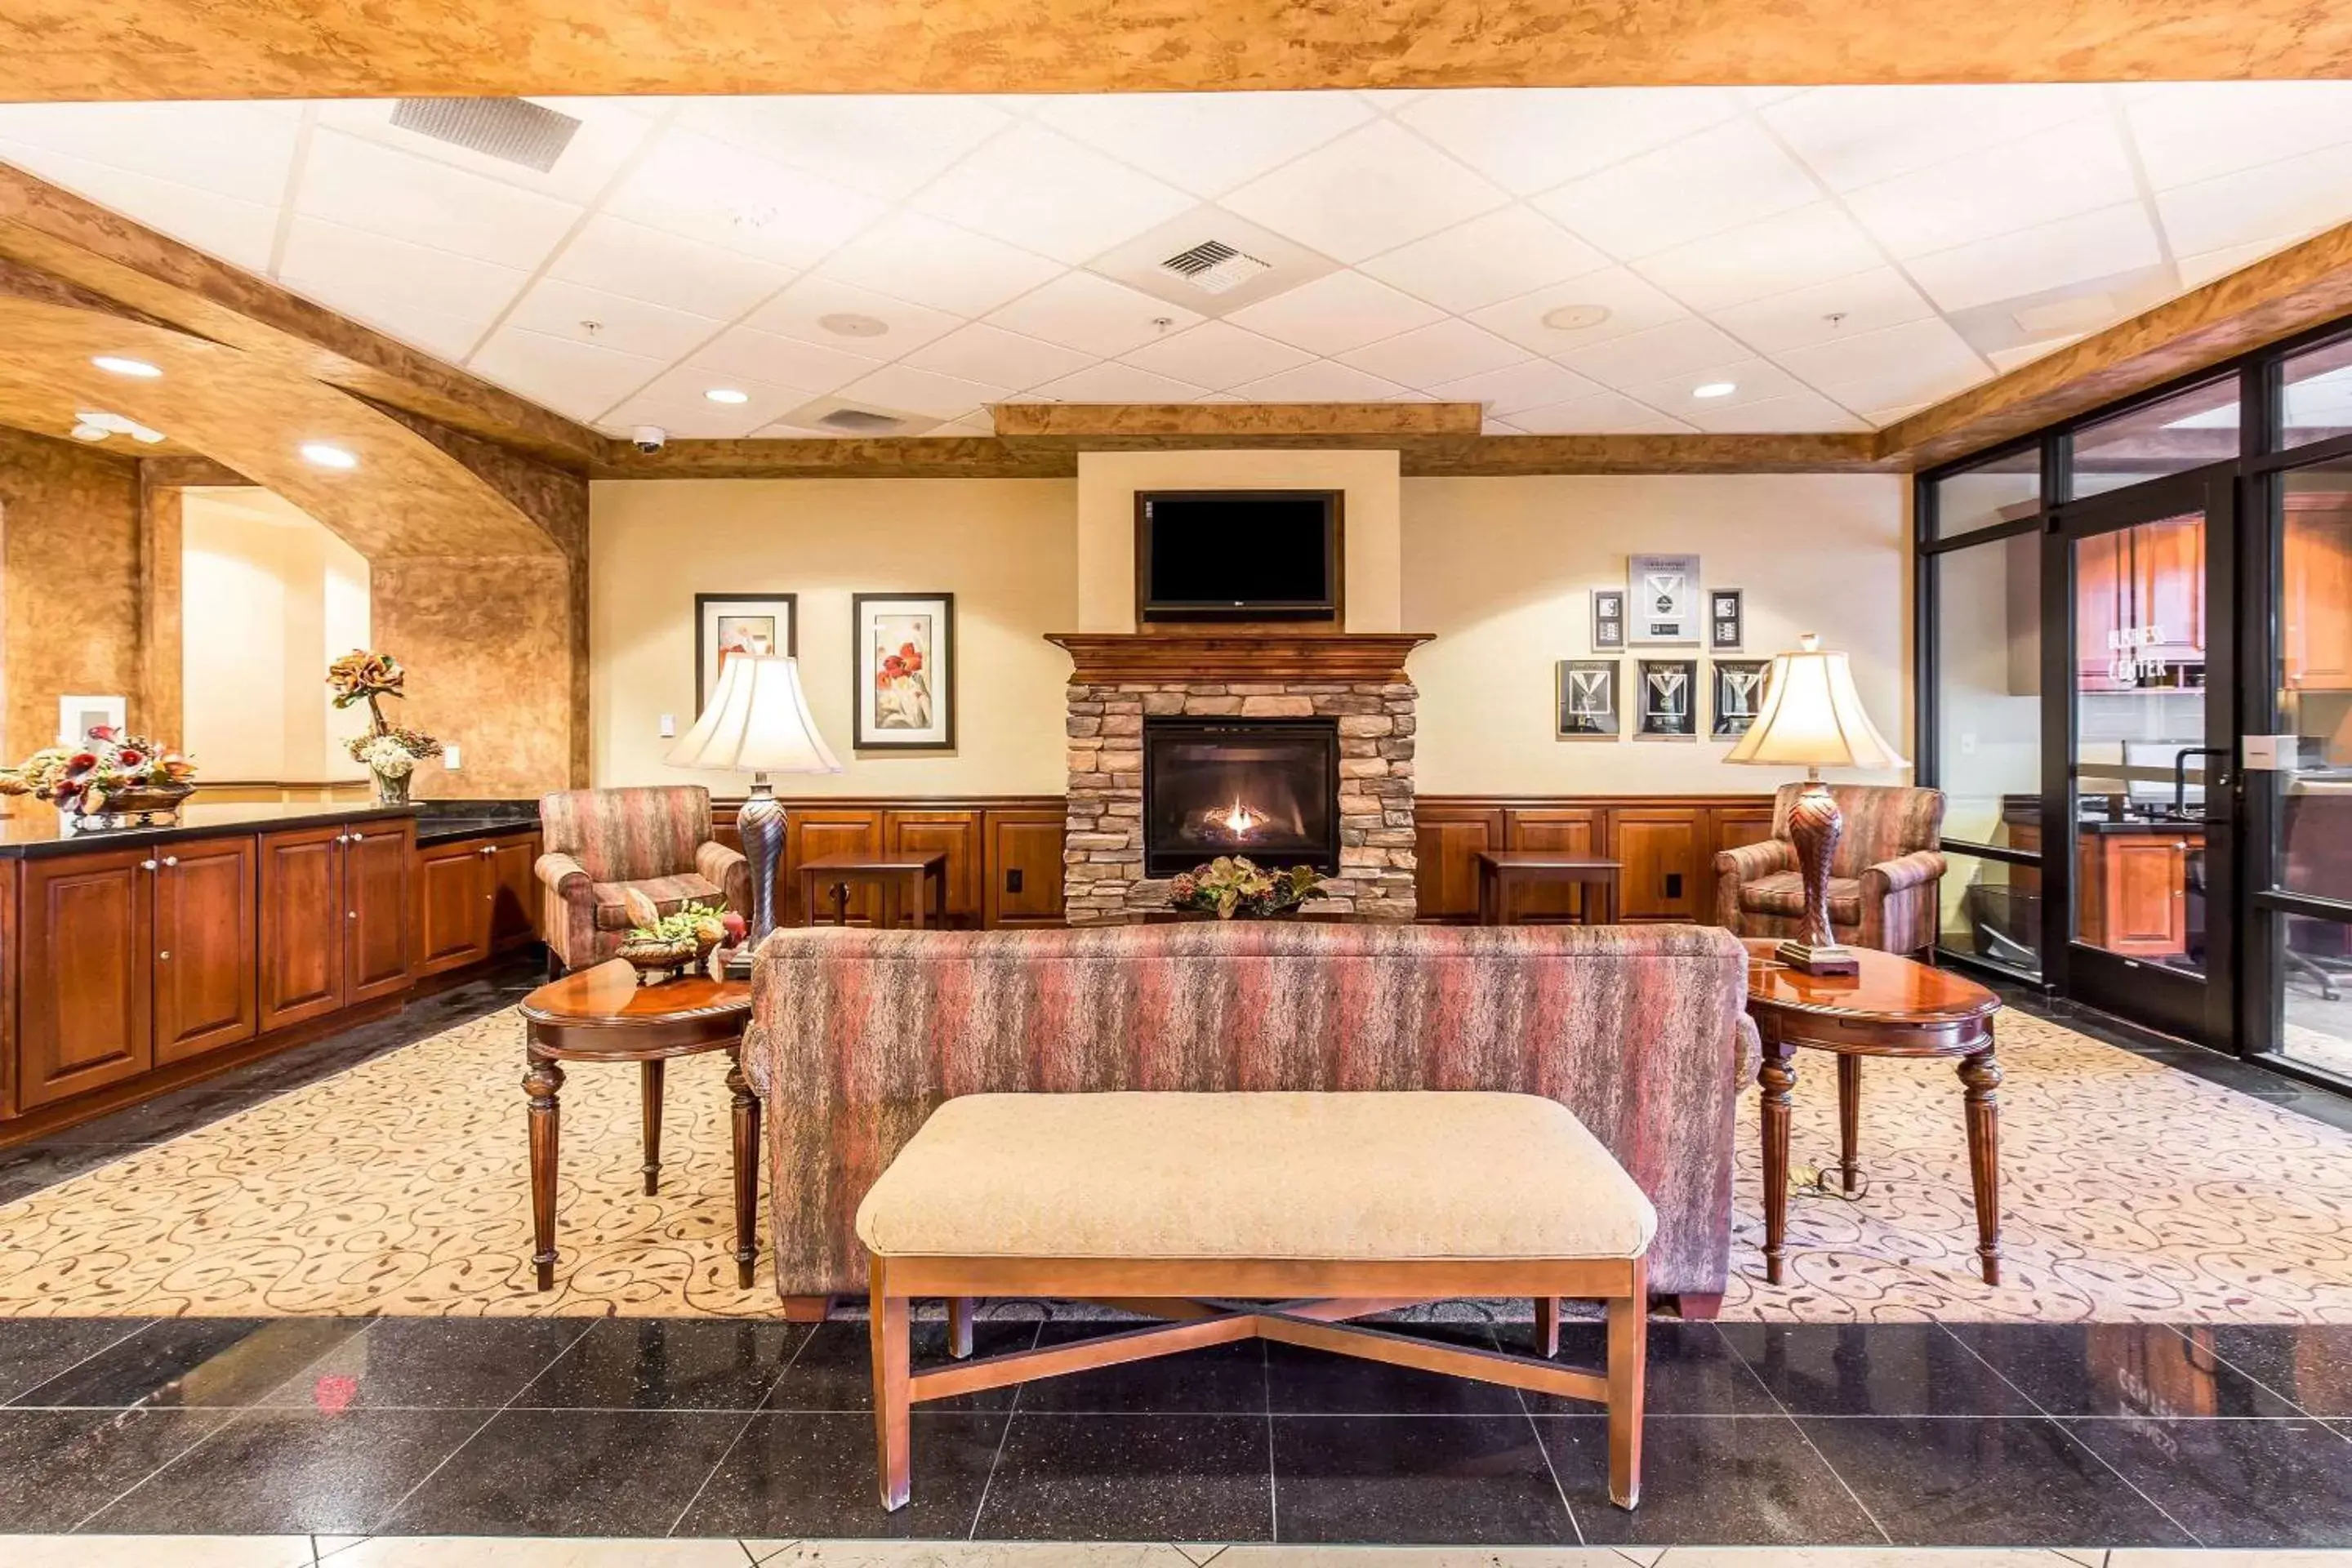 Lobby or reception in Comfort Inn & Suites Henderson - Las Vegas